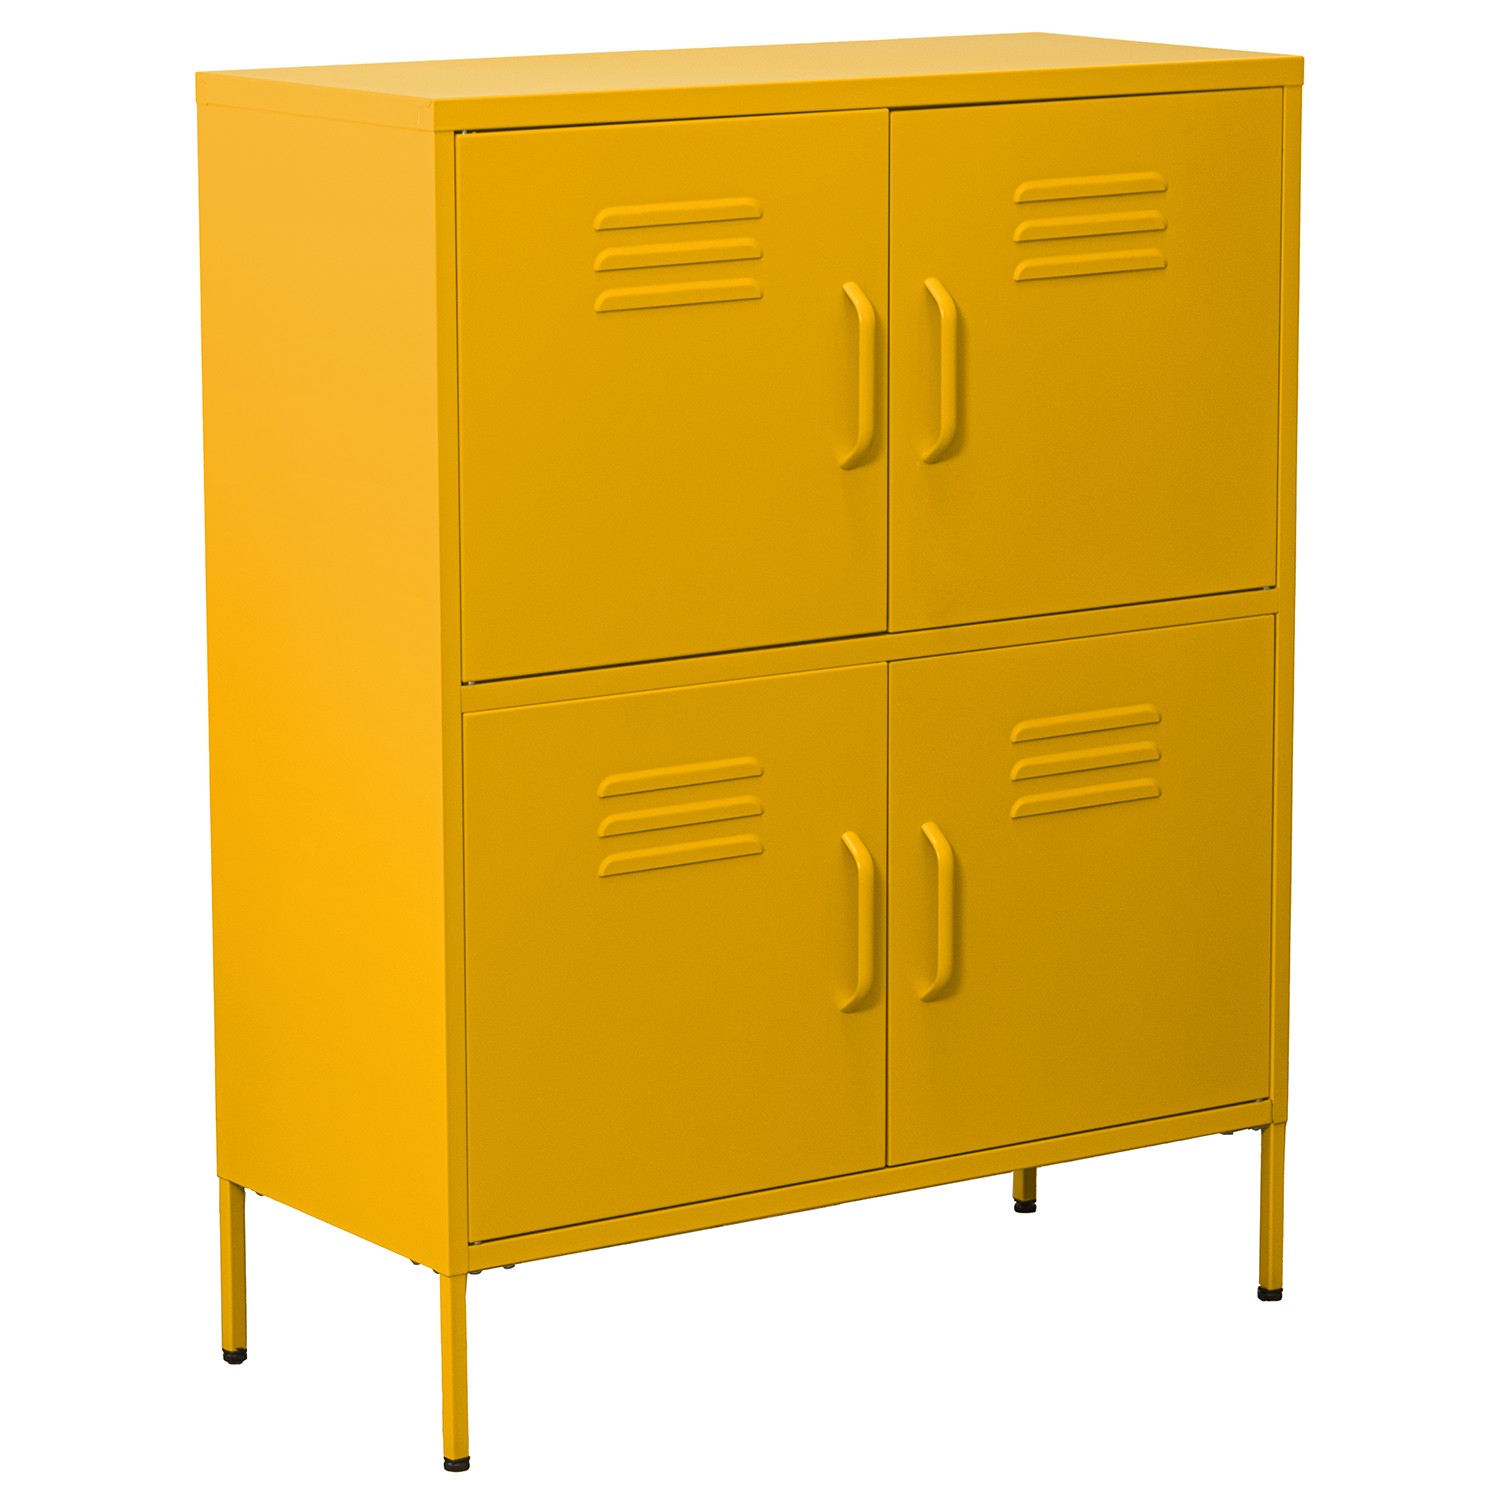 35585-mueble-auxiliar-vintage-amarillo.jfif